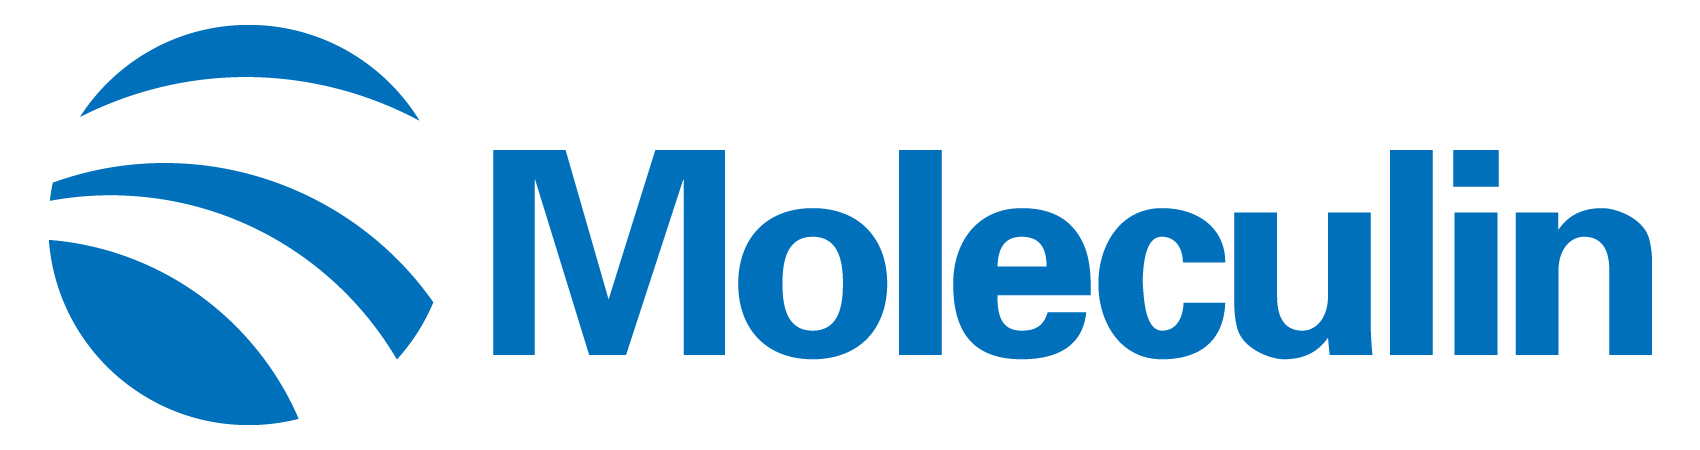 moleculin-logo_horiza55.jpg